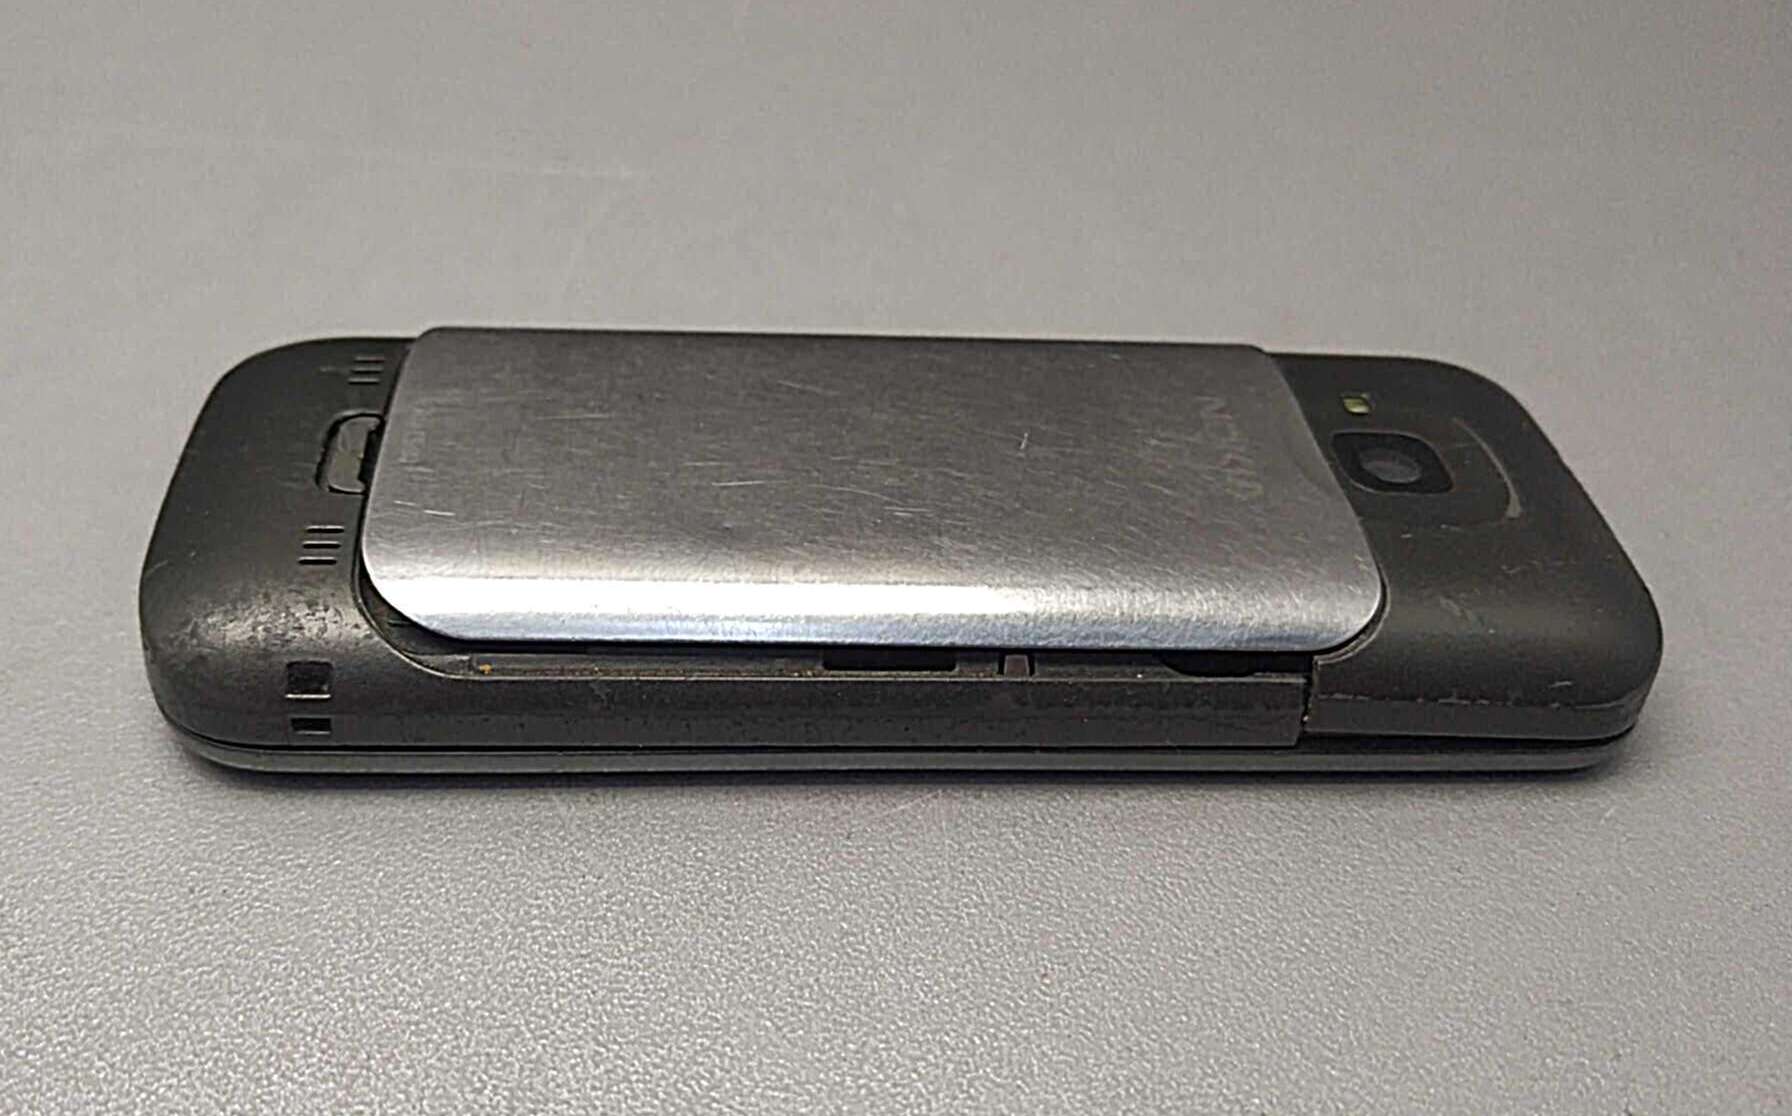 Nokia C5-00 10